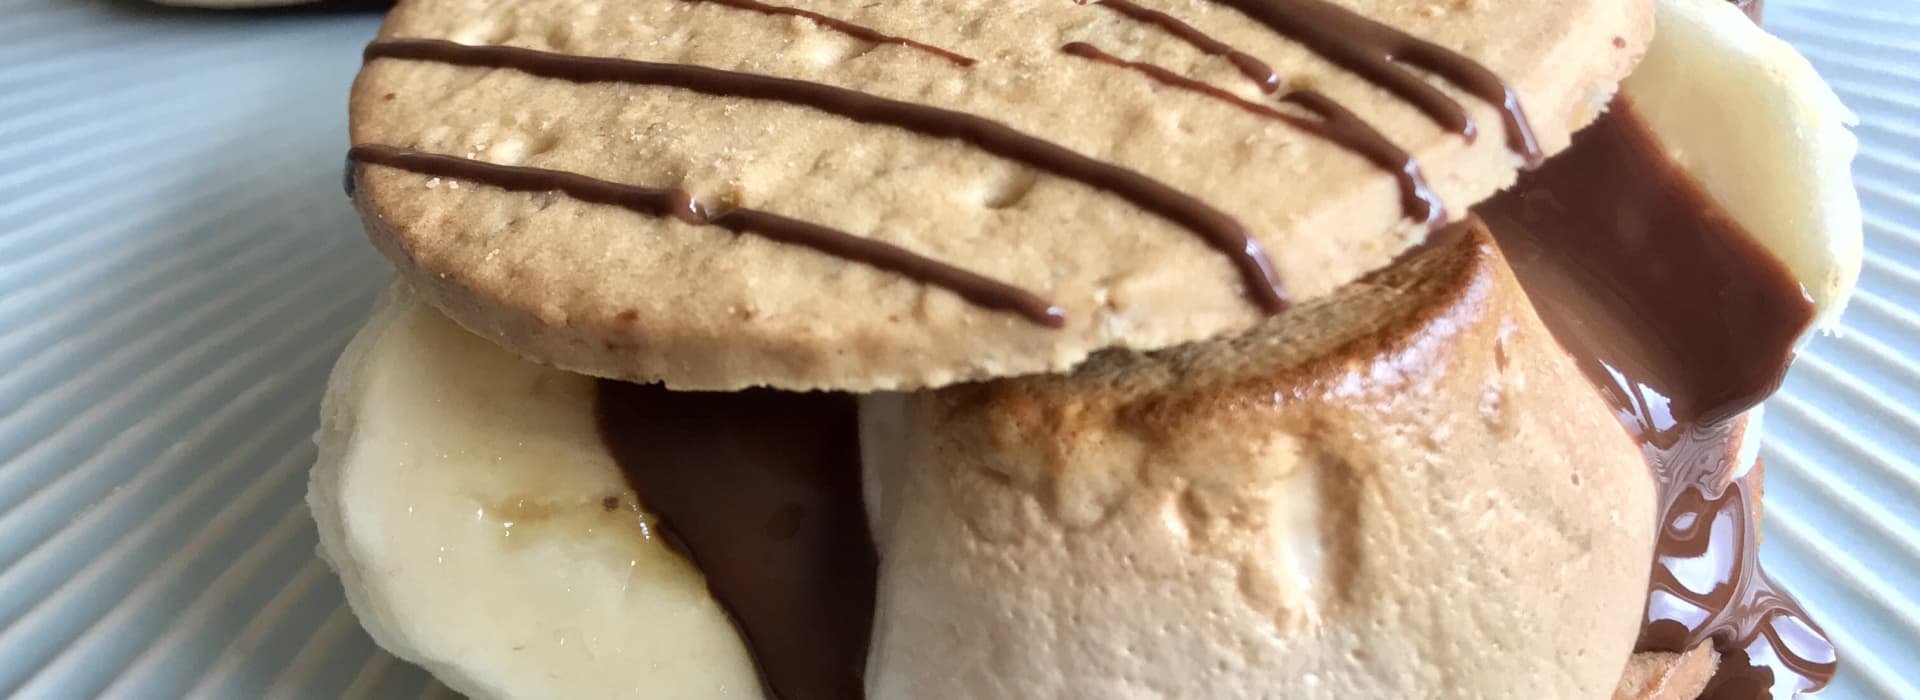 S’mores - med Sibas havrekjeks, sjokolade og banan